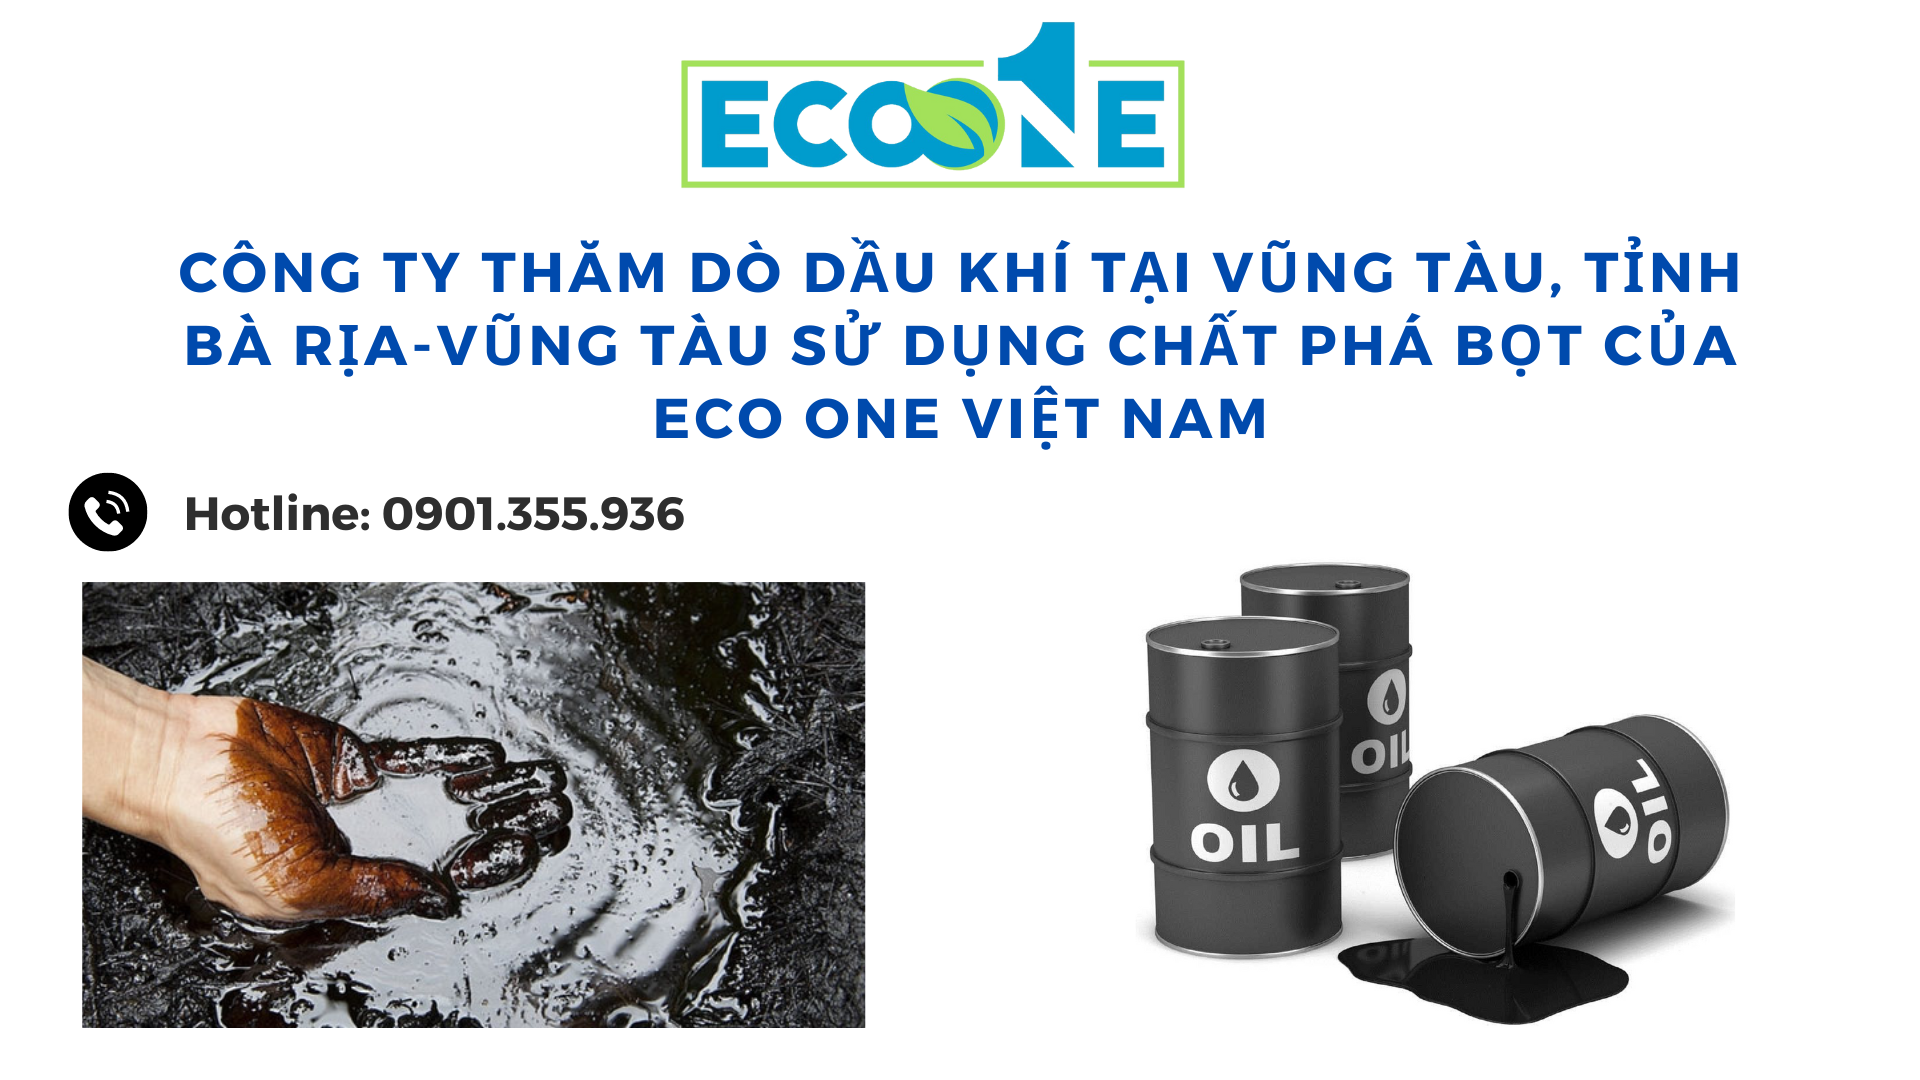 Công ty thăm dò dầu khí tại Vũng Tàu, tỉnh Bà Rịa-Vũng Tàu sử dụng chất phá bọt của Eco One Việt Nam